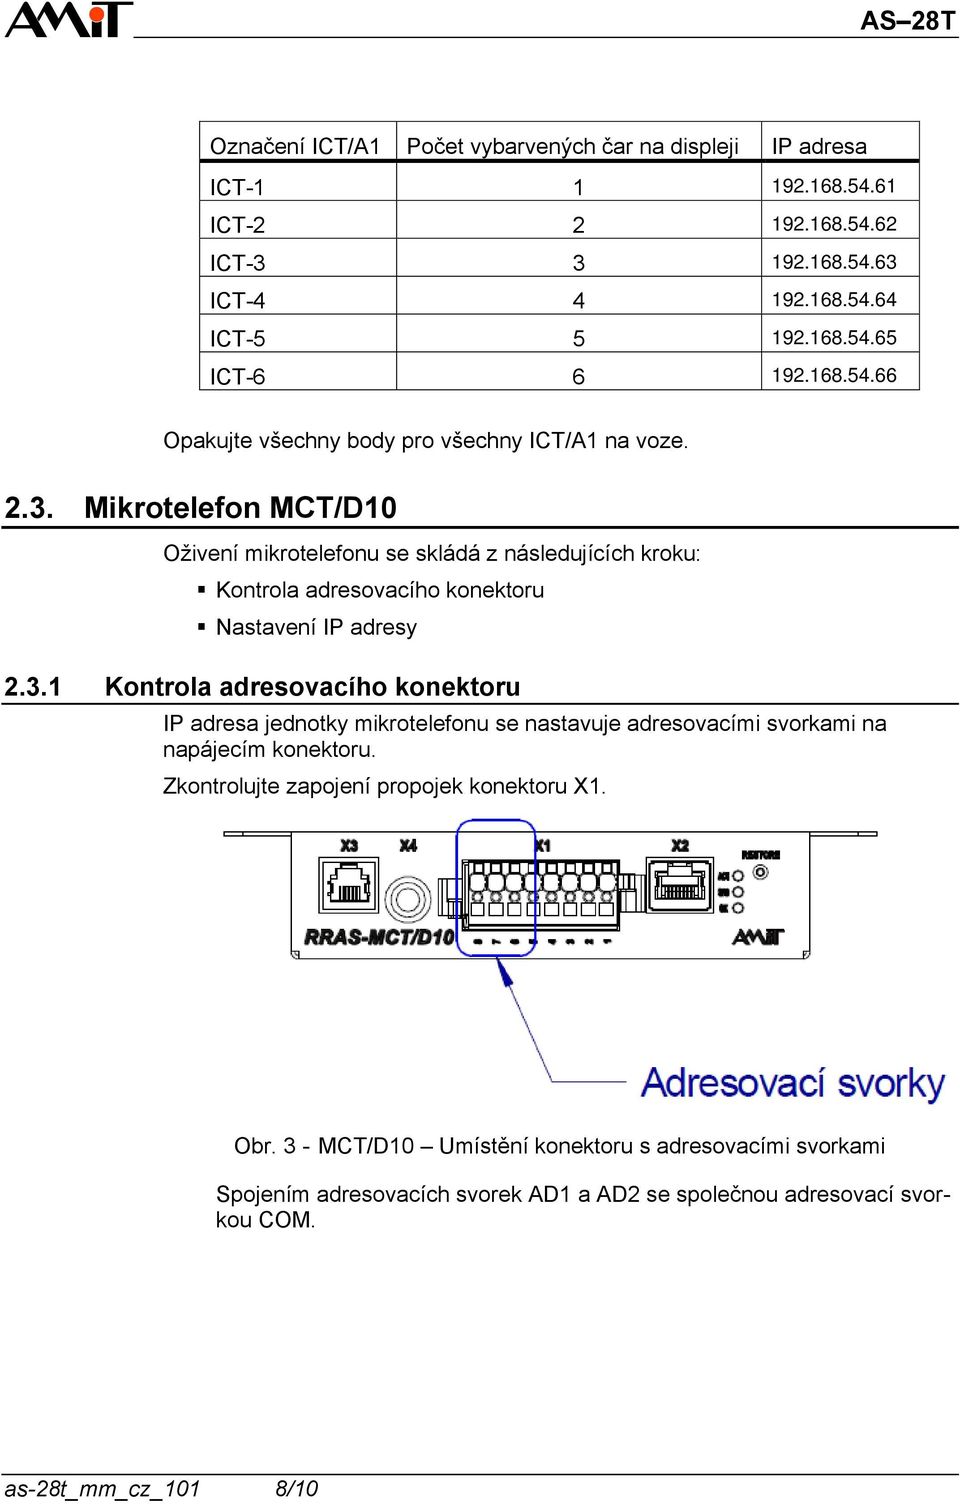 Mikrotelefon MCT/D10 Oživení mikrotelefonu se skládá z následujících kroku: Kontrola adresovacího konektoru Nastavení IP adresy 2.3.